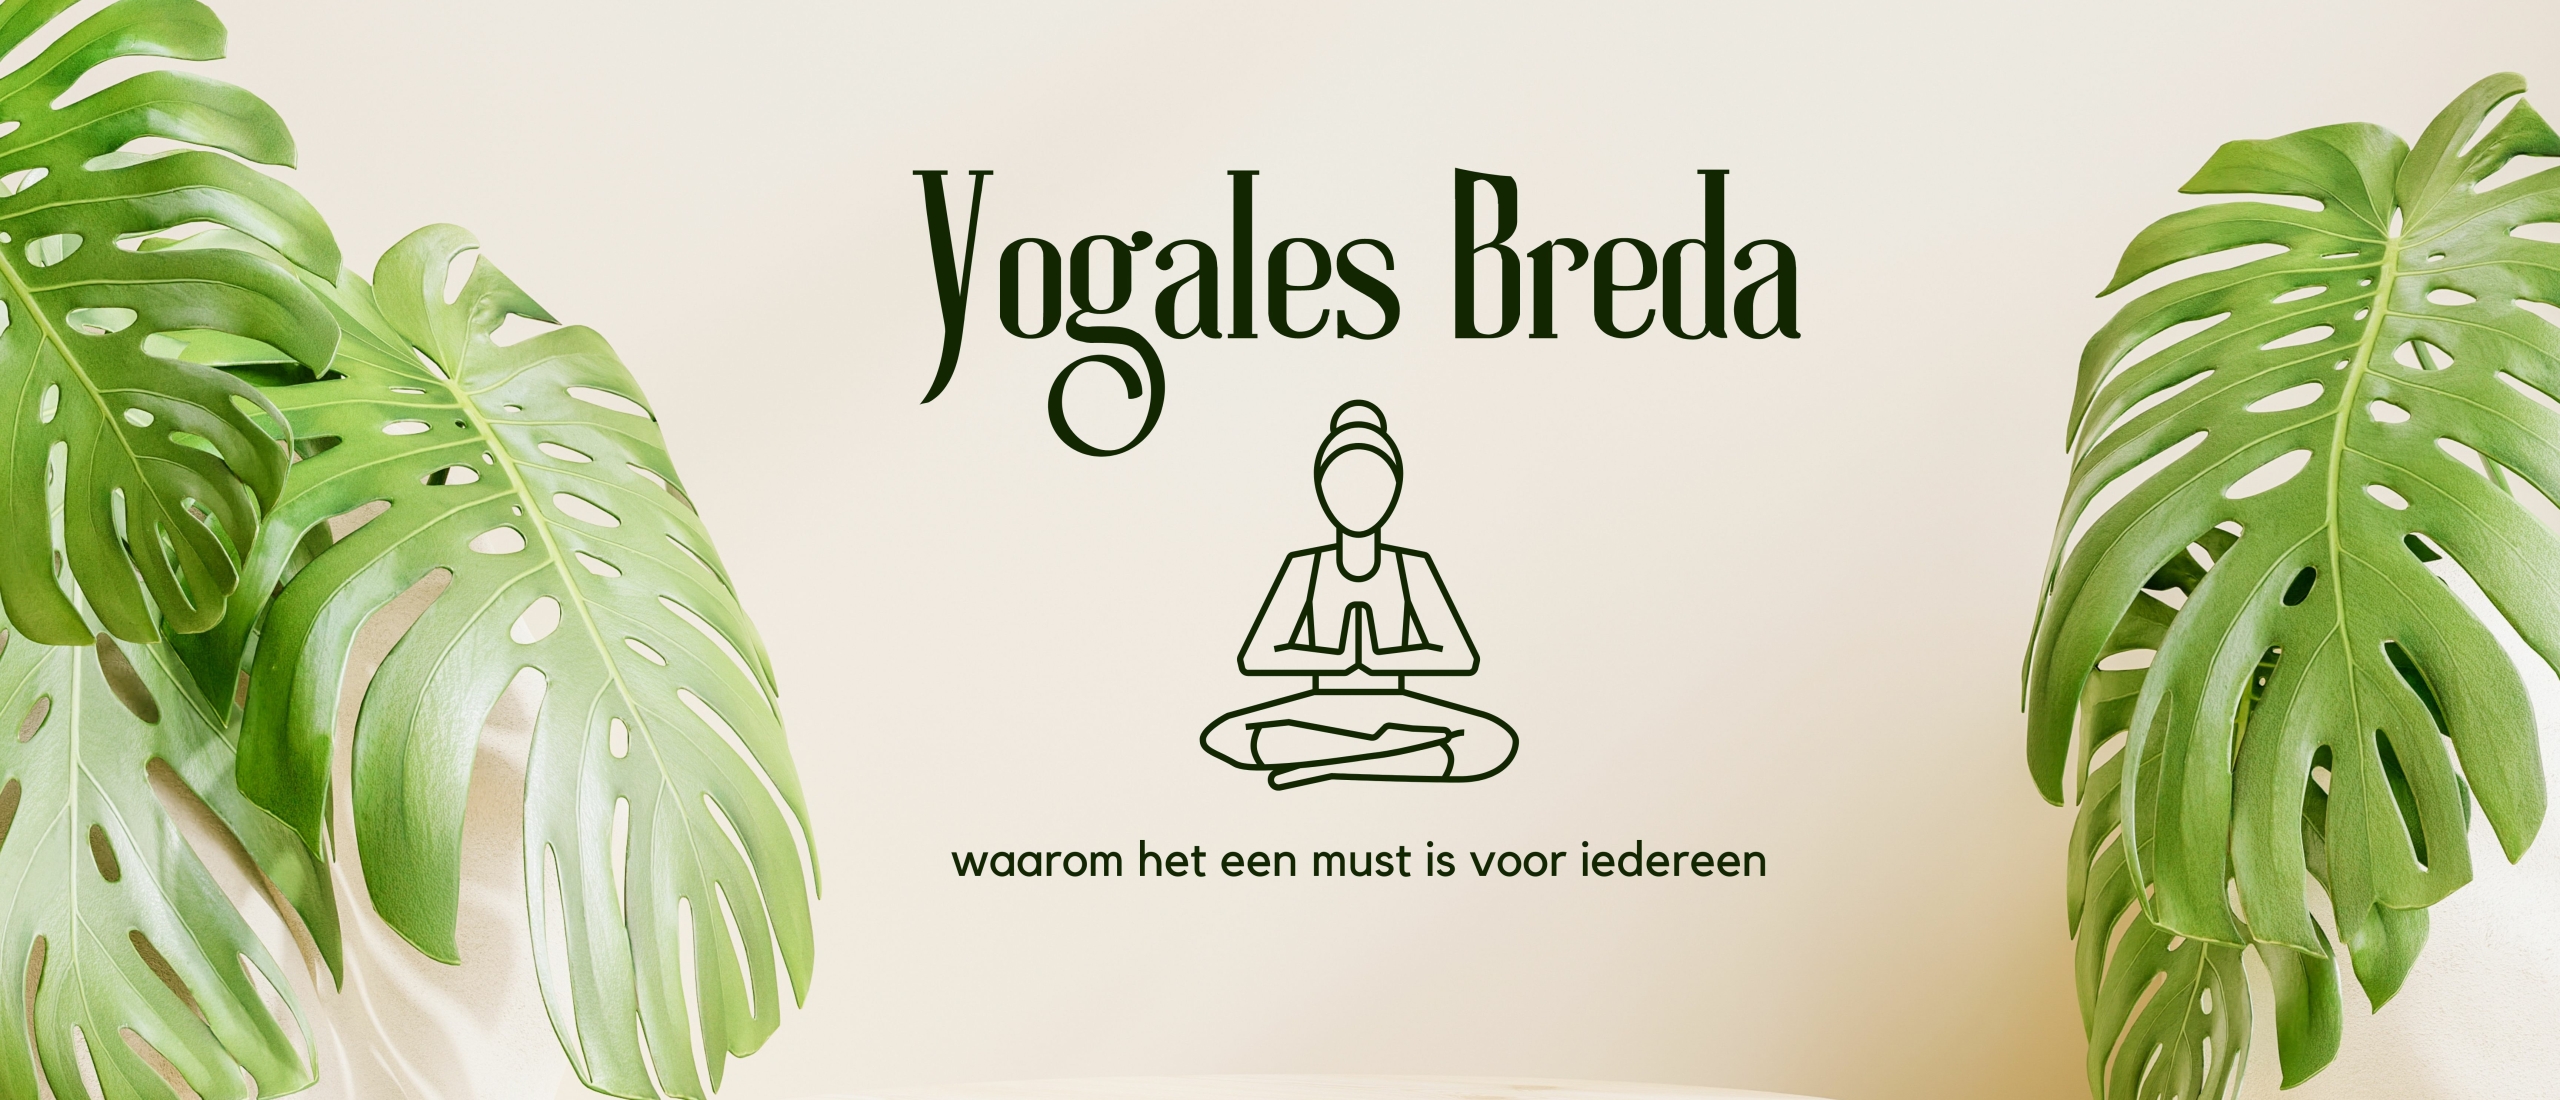 Yogales in Breda: waarom het een must is voor iedereen